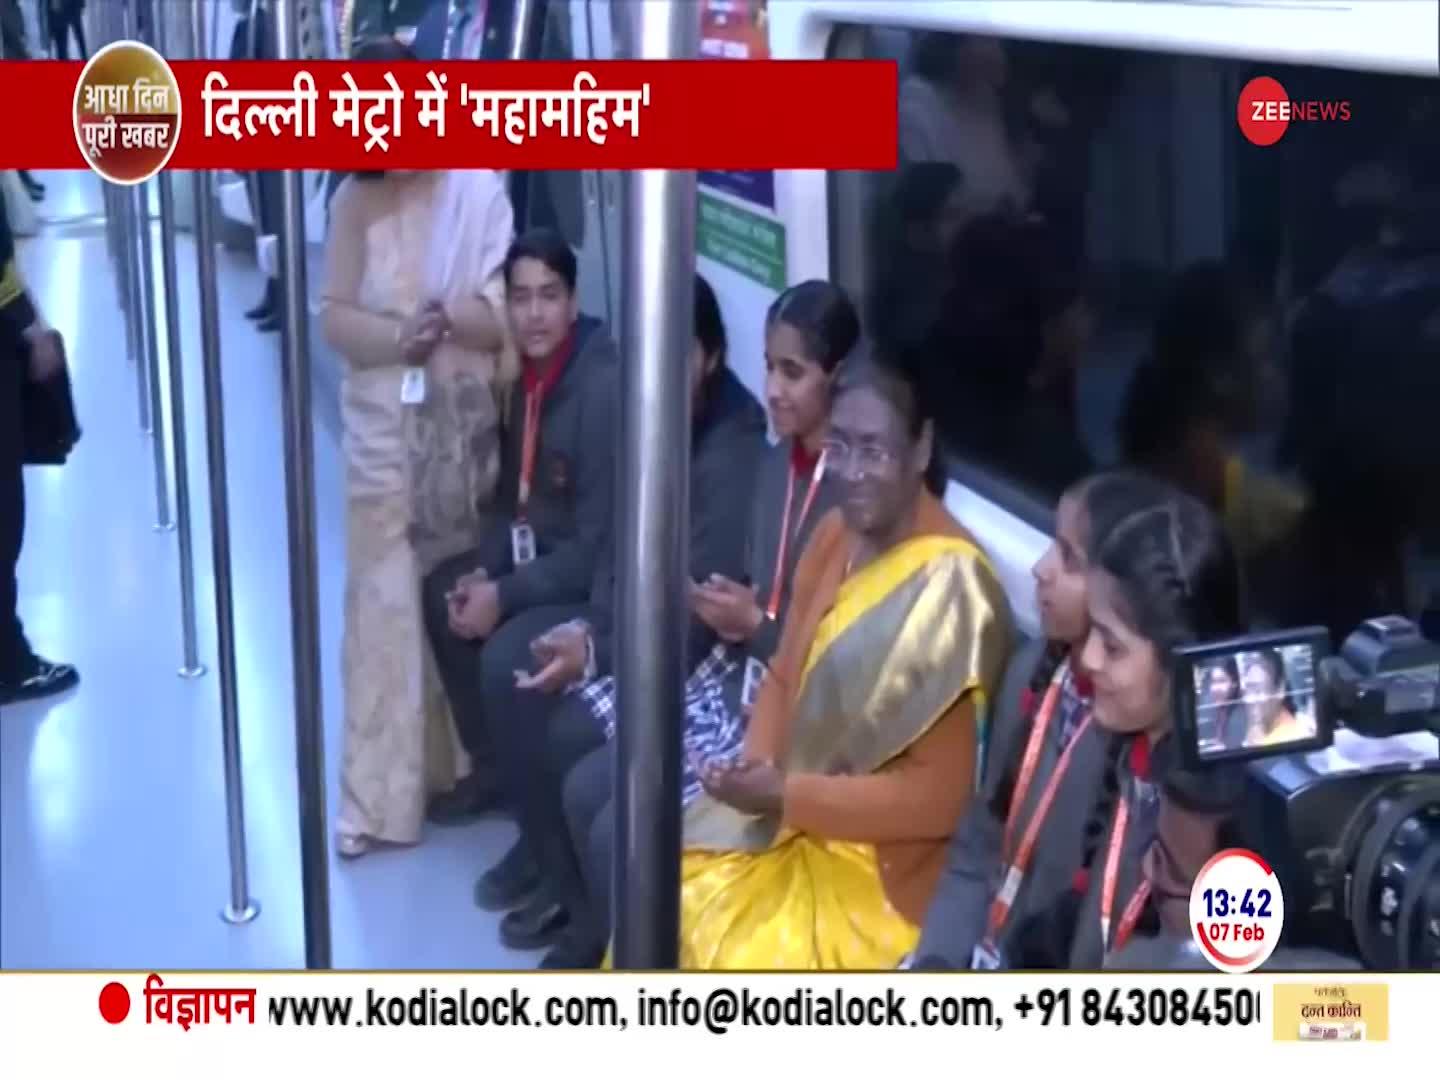 Draupadi Murmu News: राष्ट्रपति द्रौपदी मुर्मू ने की दिल्ली मेट्रो में यात्रा